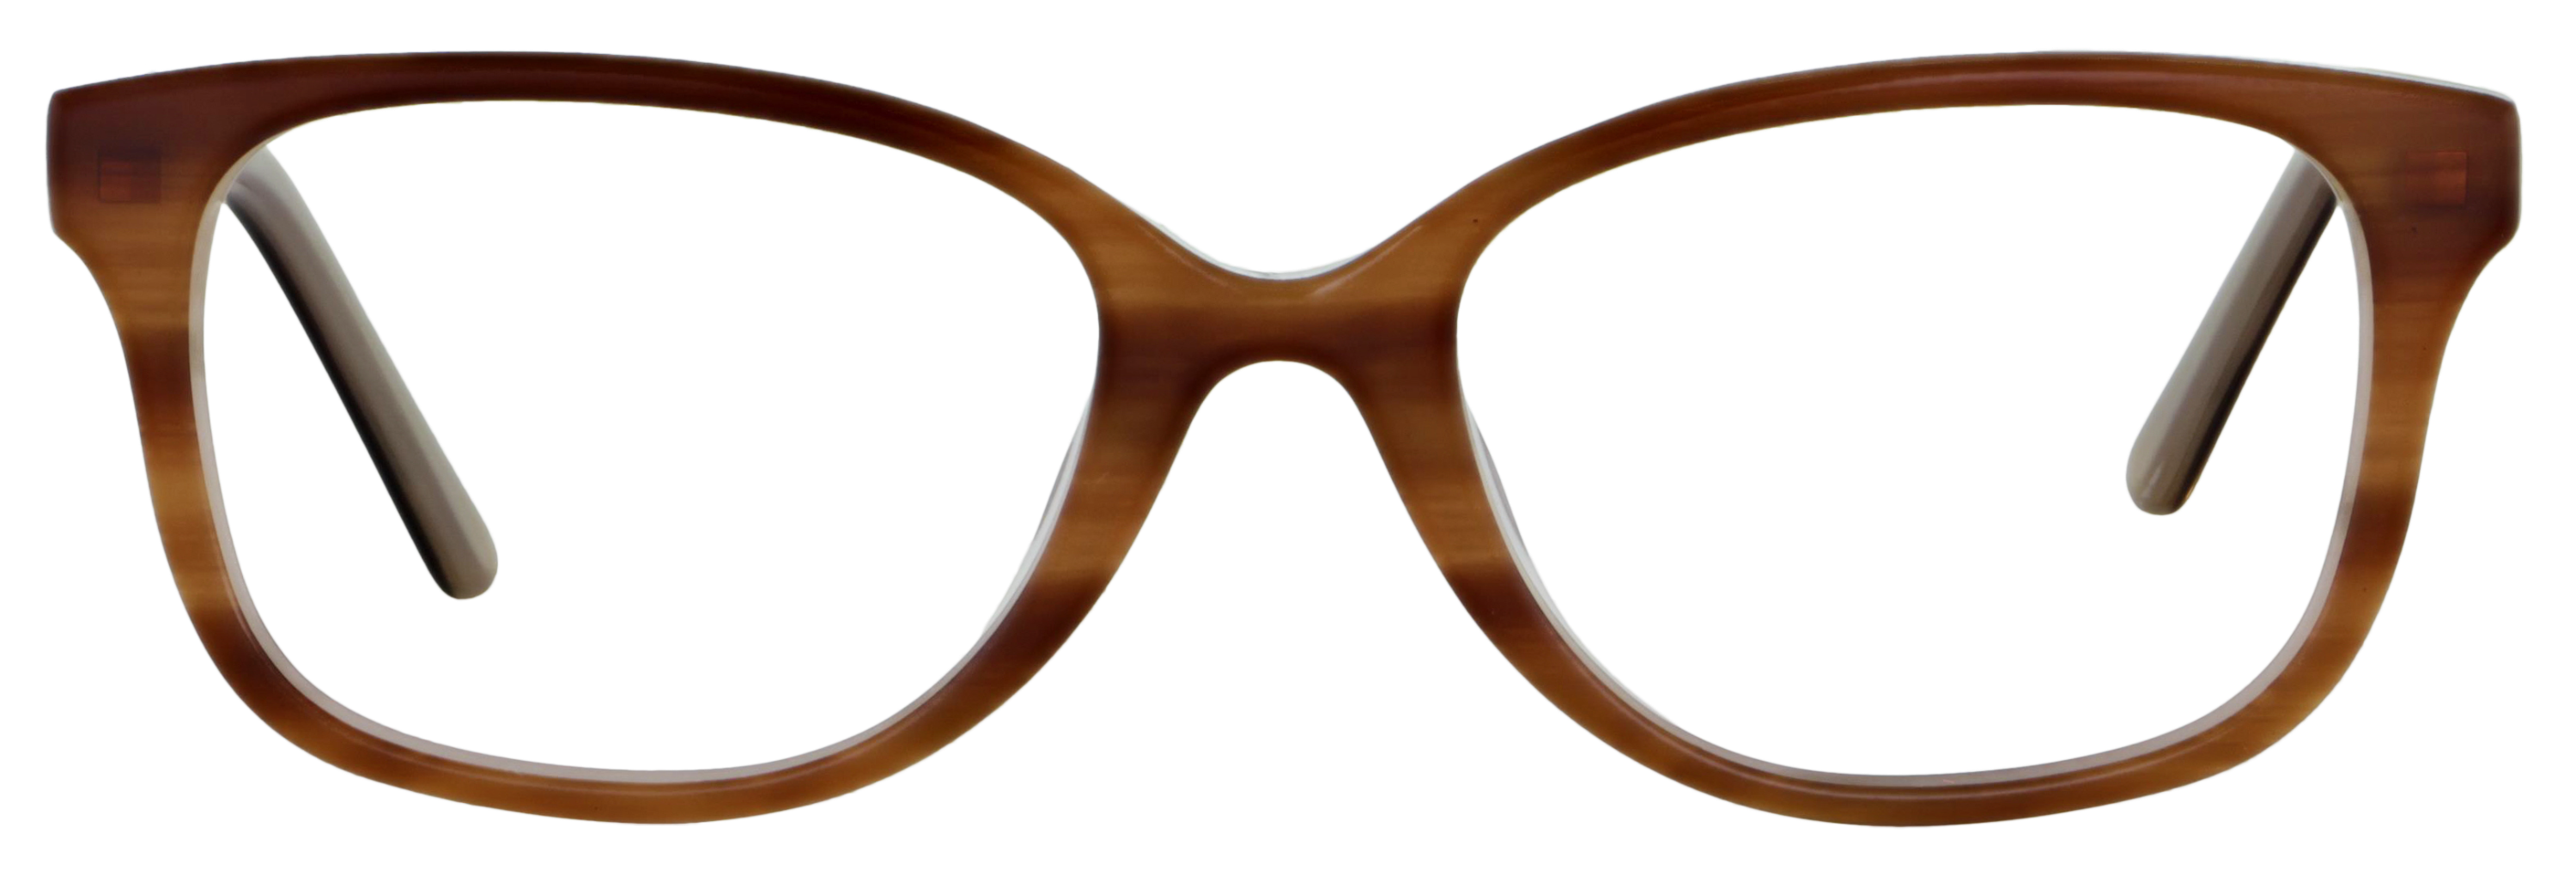 Das Bild zeigt die Korrektionsbrille 139861 von der Marke Abele Optik in braun.